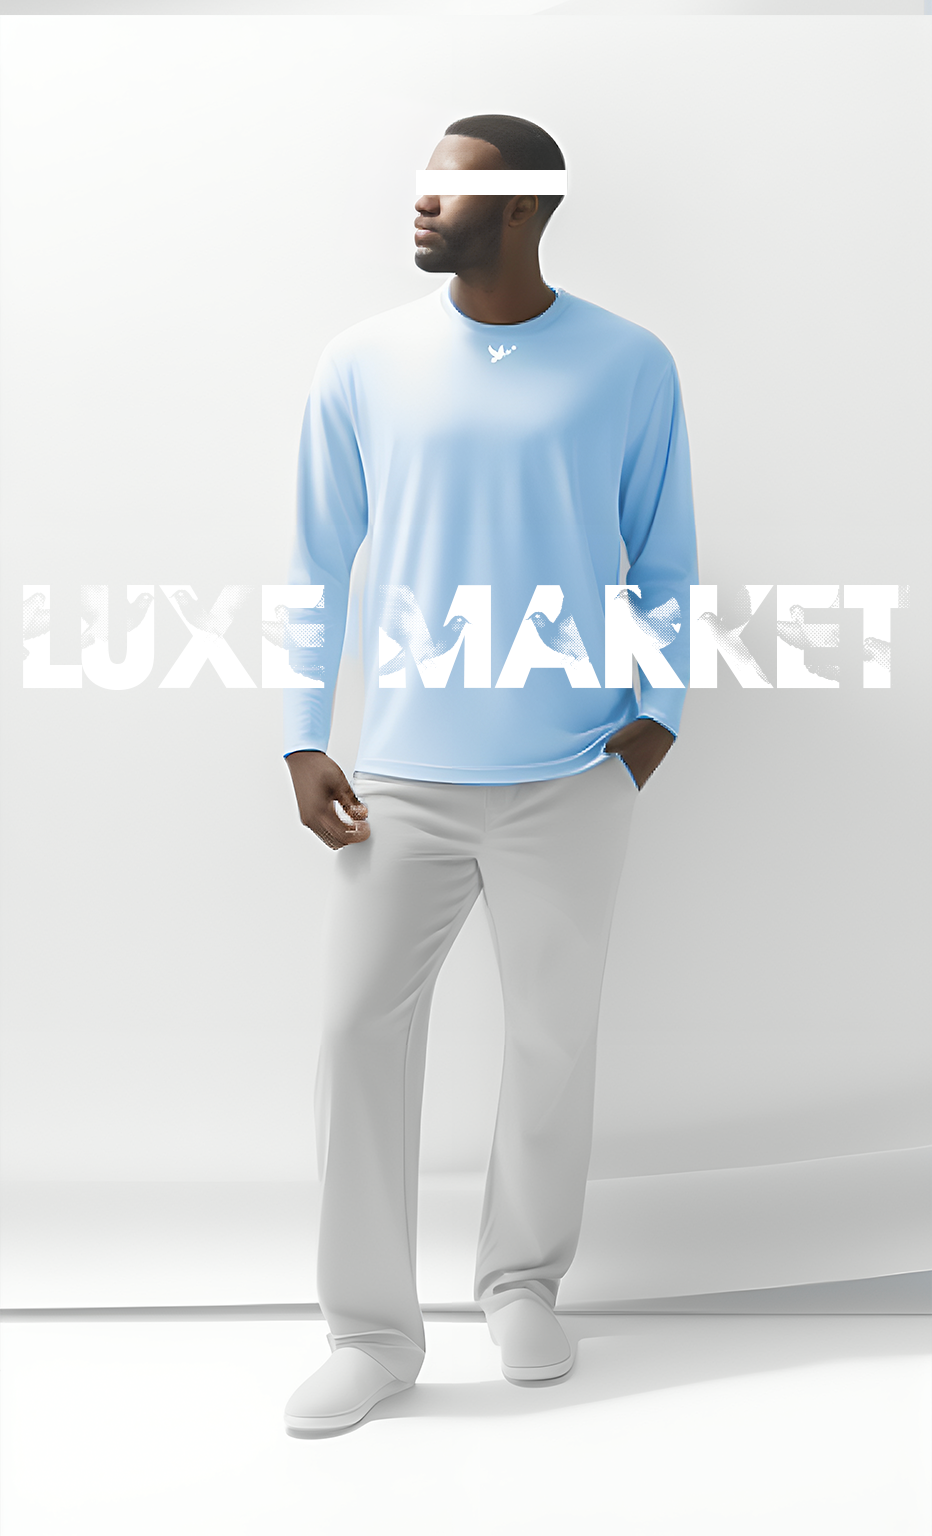 Luxé Market Collection